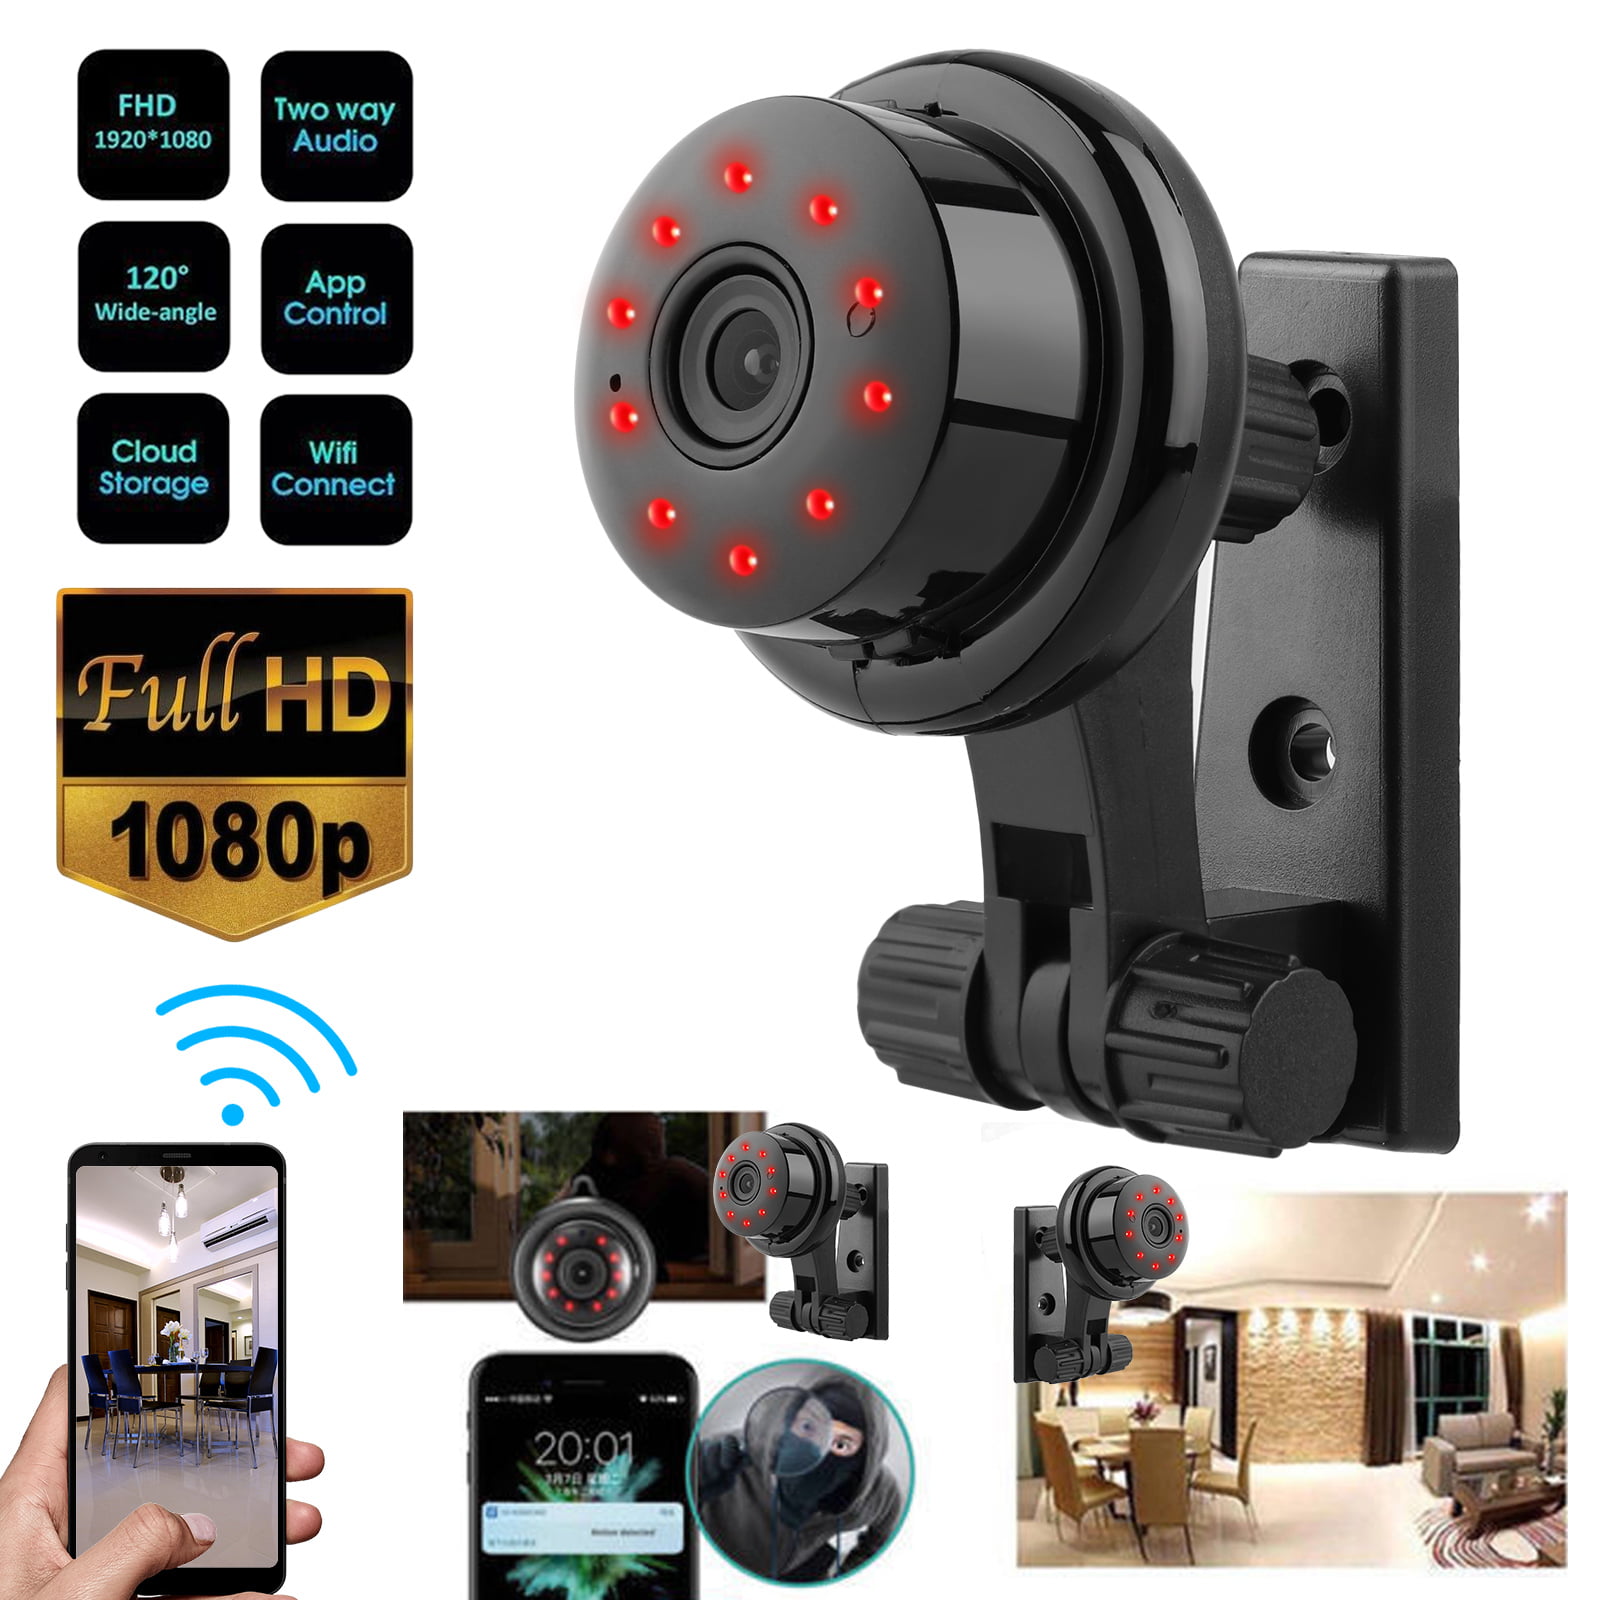 Small home security cameras